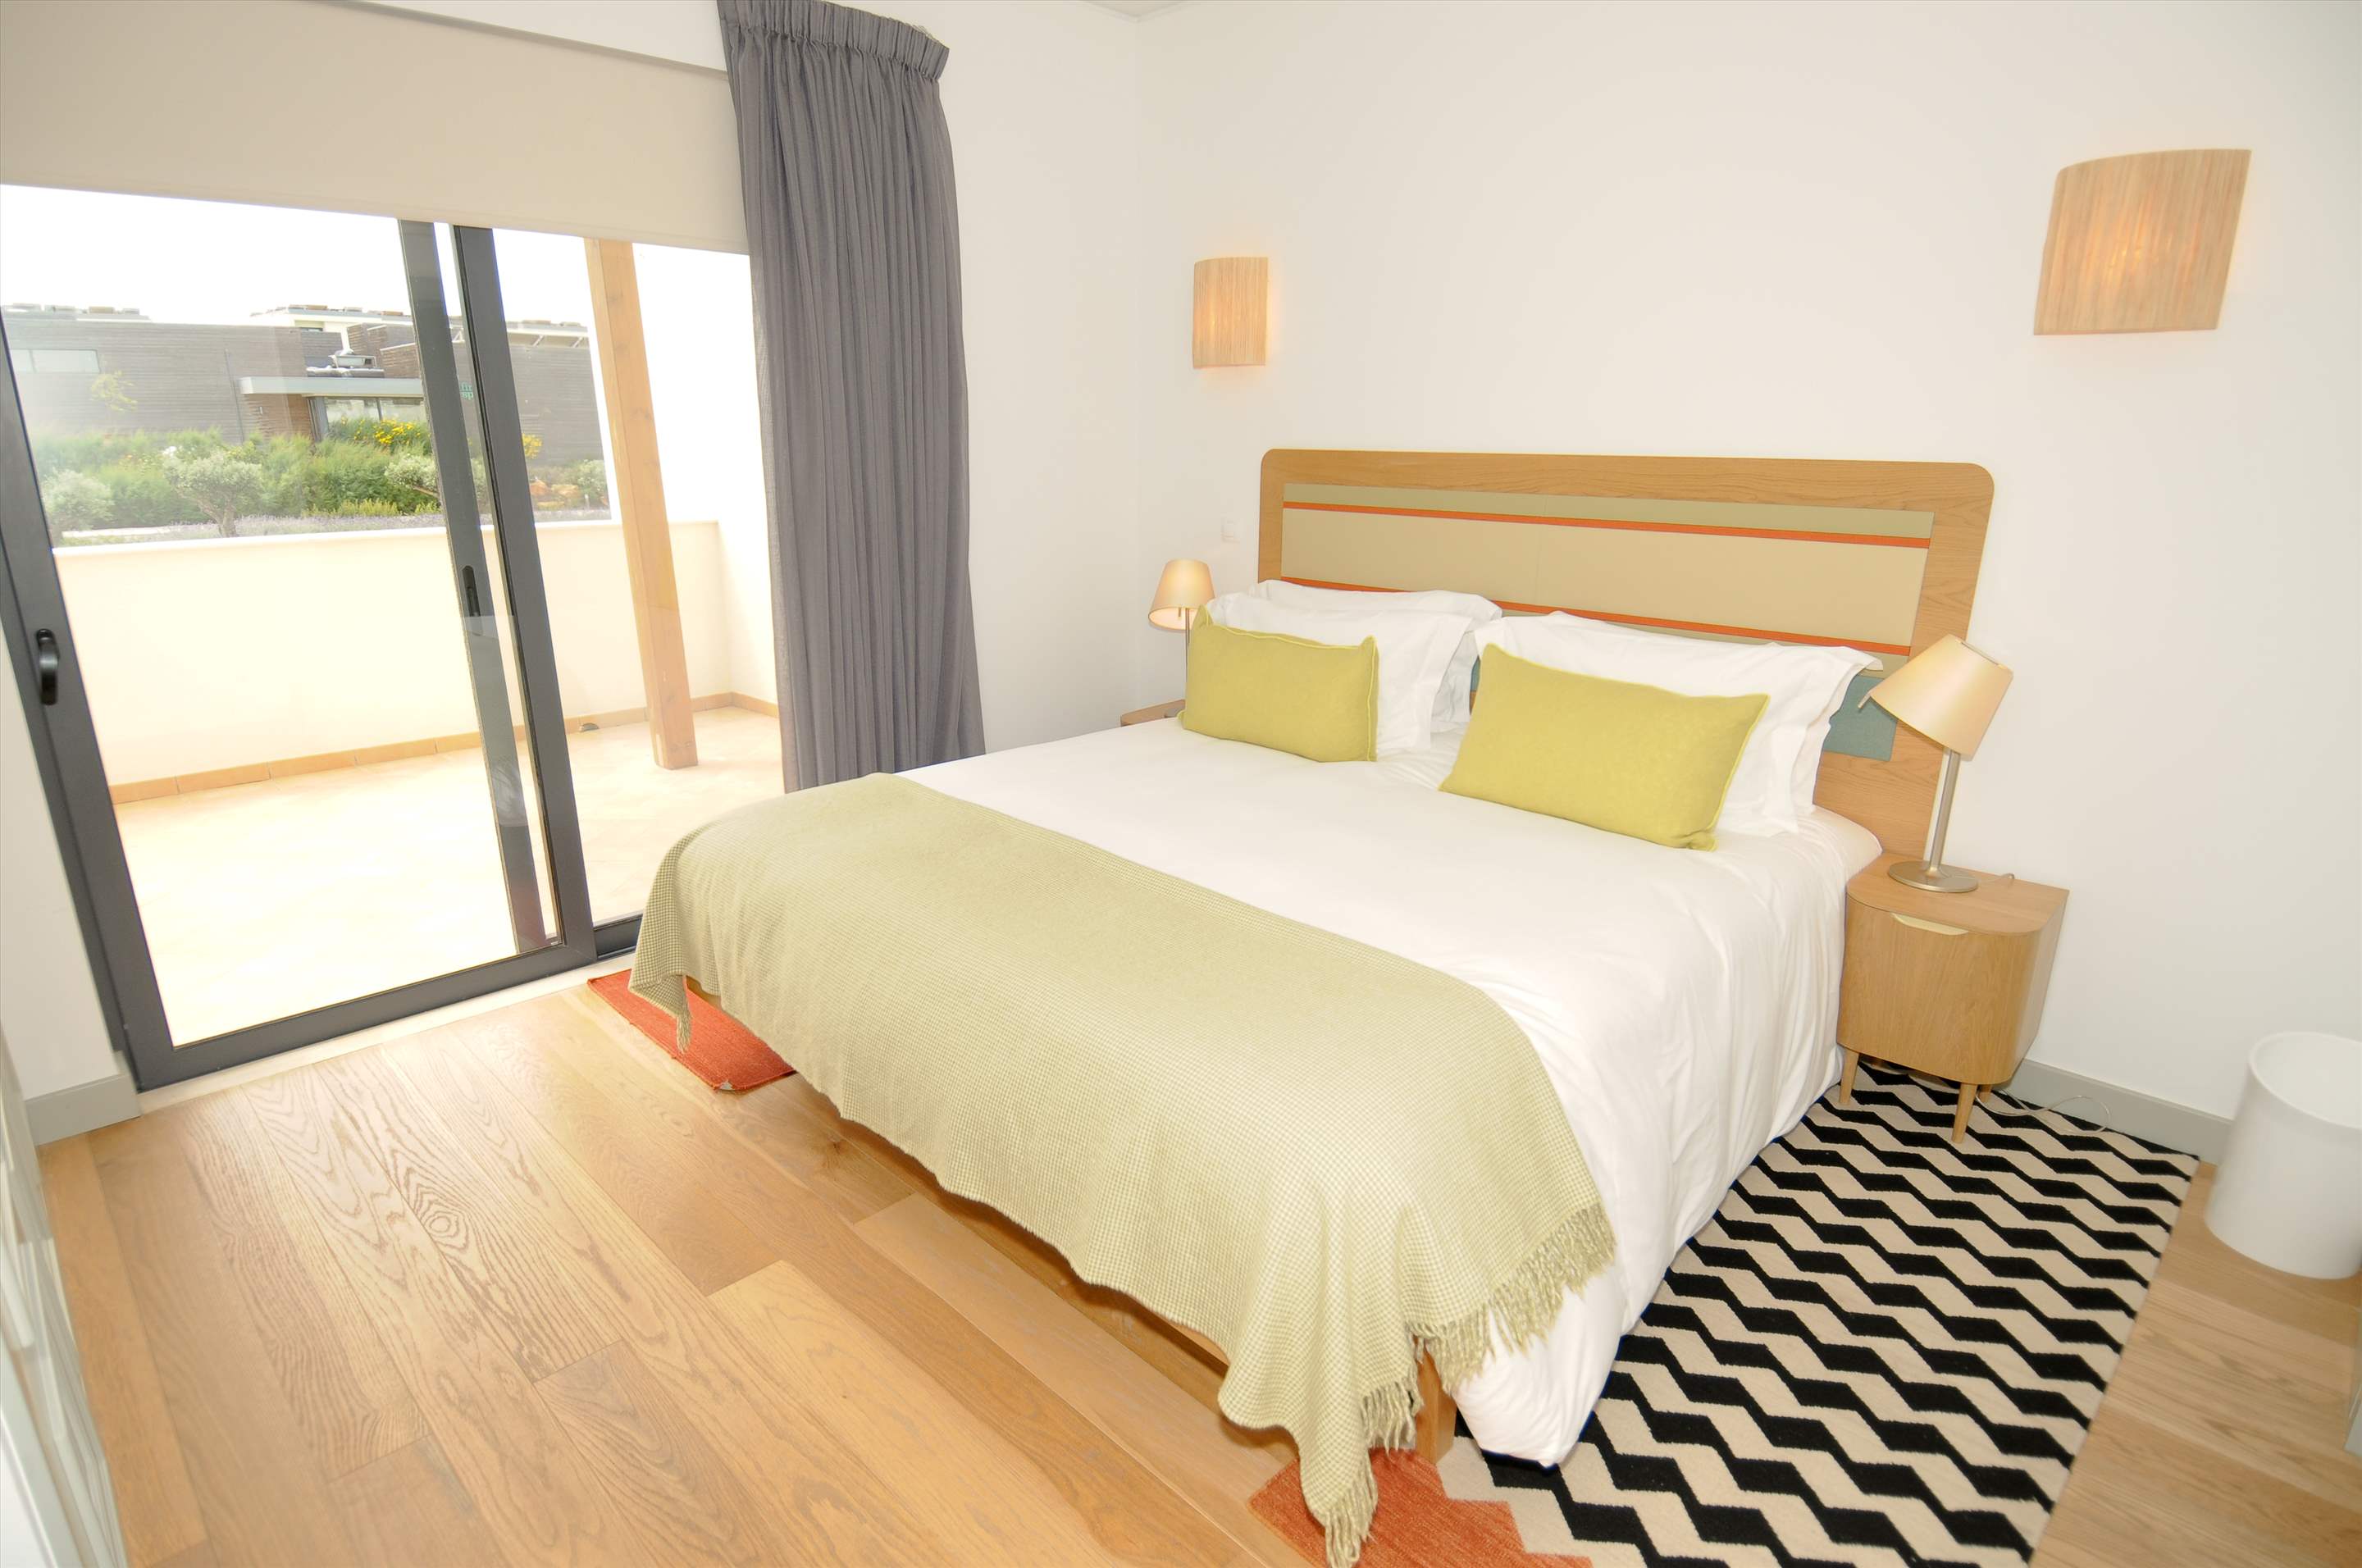 Martinhal Village Garden House, Grand Deluxe Two Bedroom, 2 bedroom villa in Martinhal Sagres, Algarve Photo #6